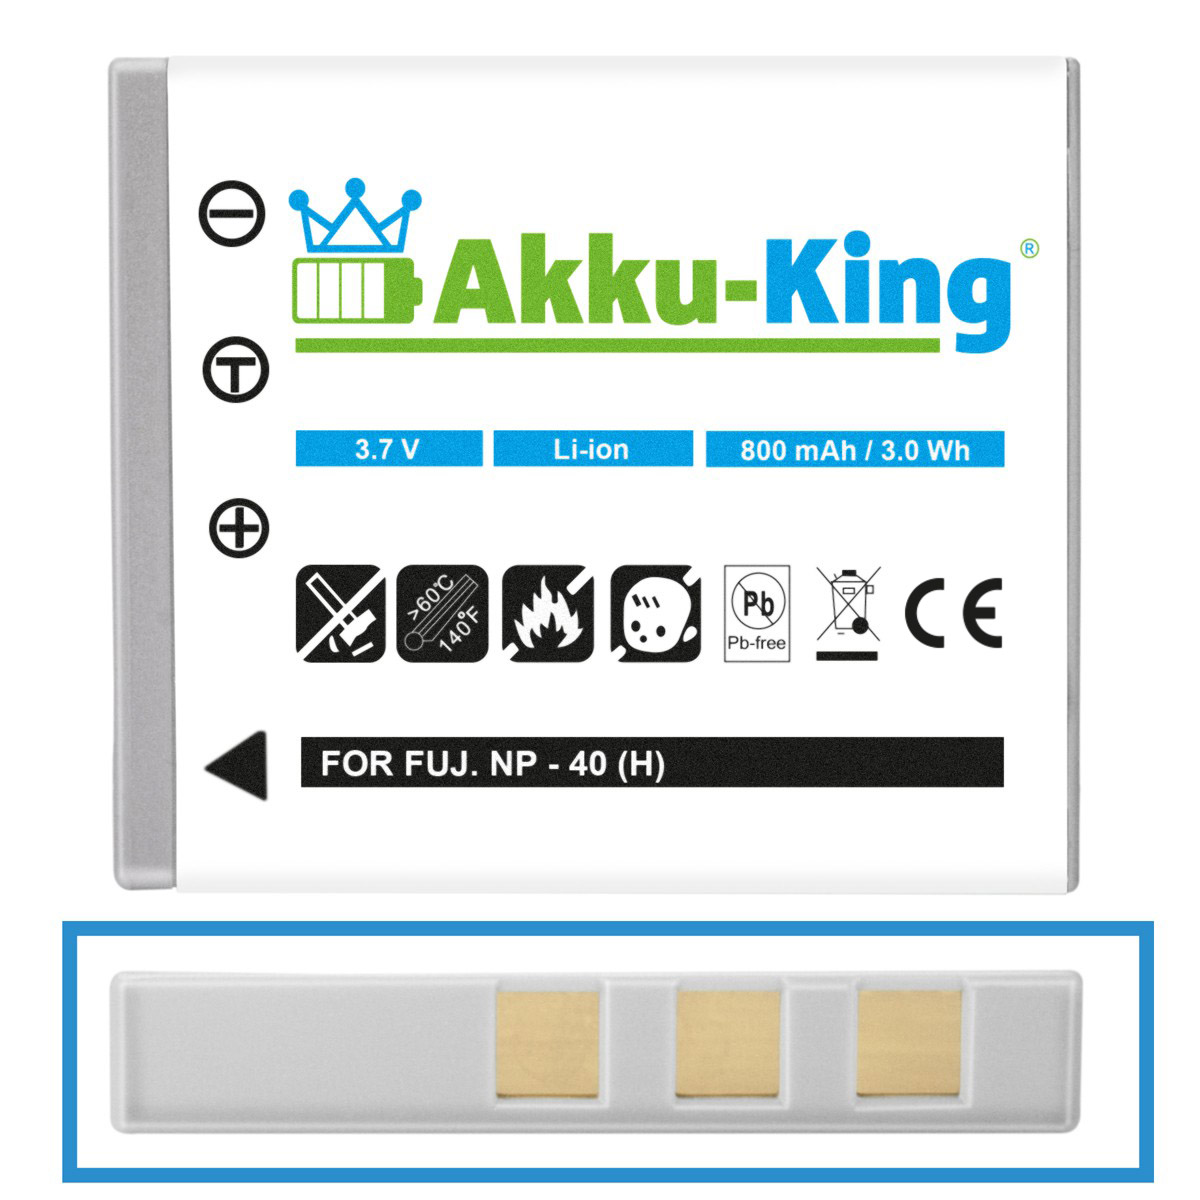 Akku Kamera-Akku, Li-Ion kompatibel AKKU-KING mit 800mAh KLIC-7005 3.7 Volt, Kodak